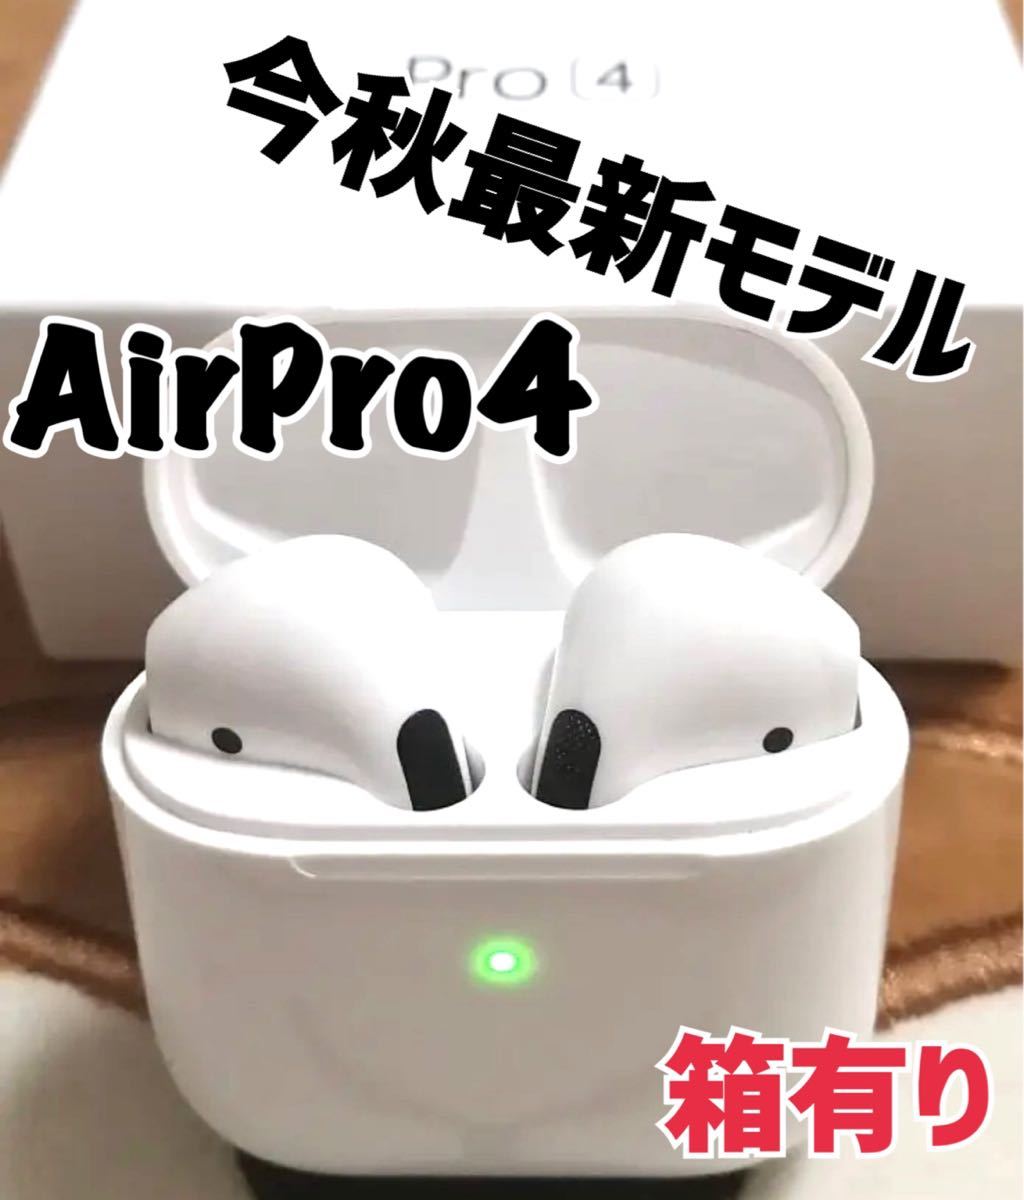 最新モデル】AirPro4 Bluetoothワイヤレスイヤホン 箱あり | tspea.org